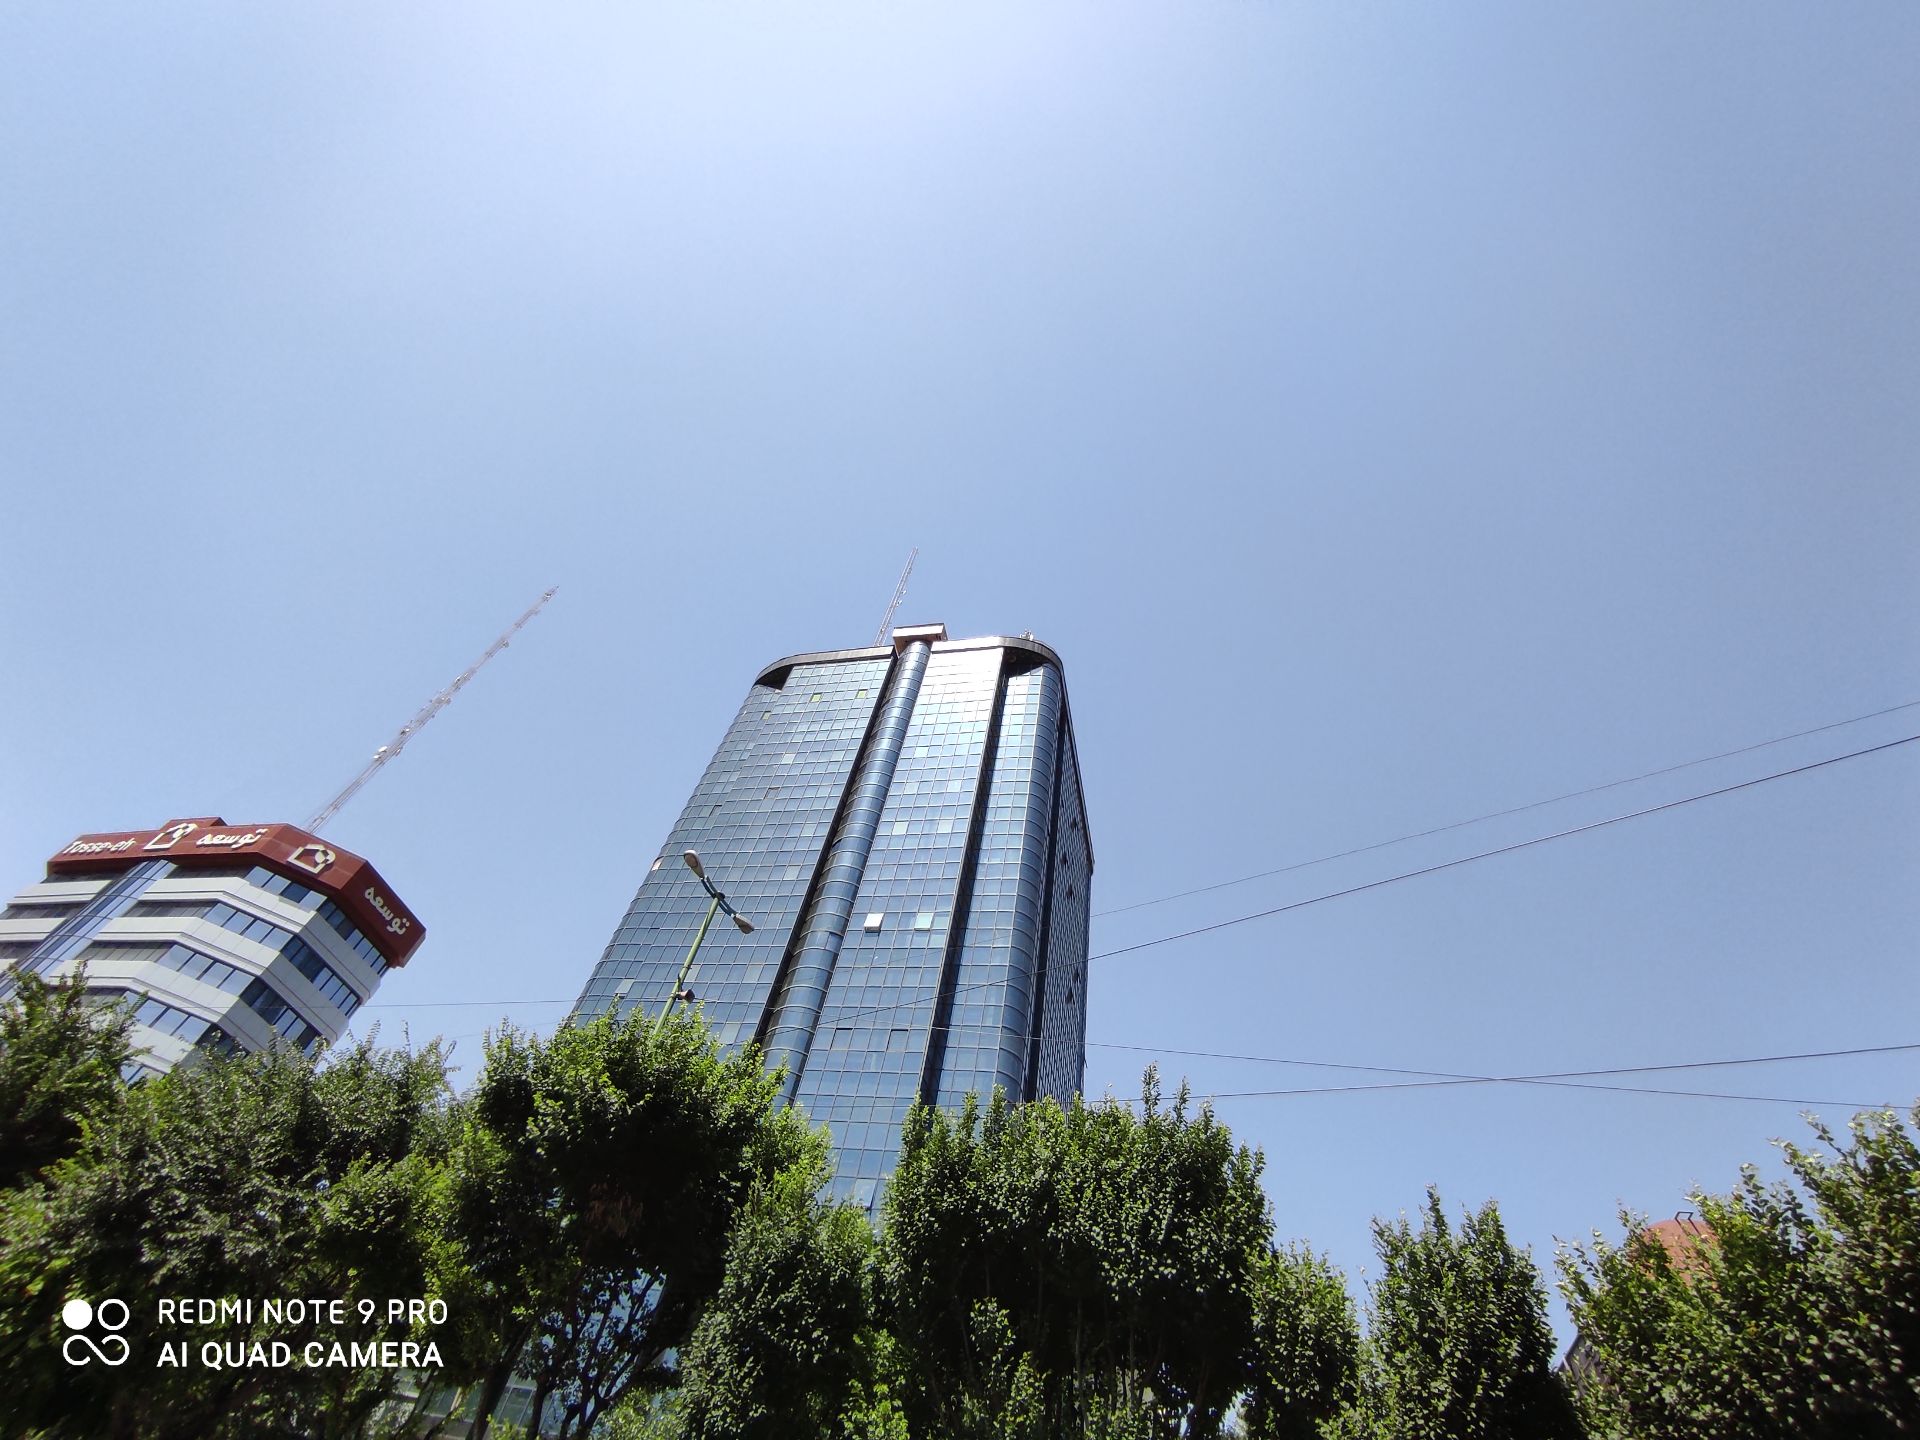 نمونه عکس ردمی نوت 9 پرو - نمای فوق عریض ساختمان بلند